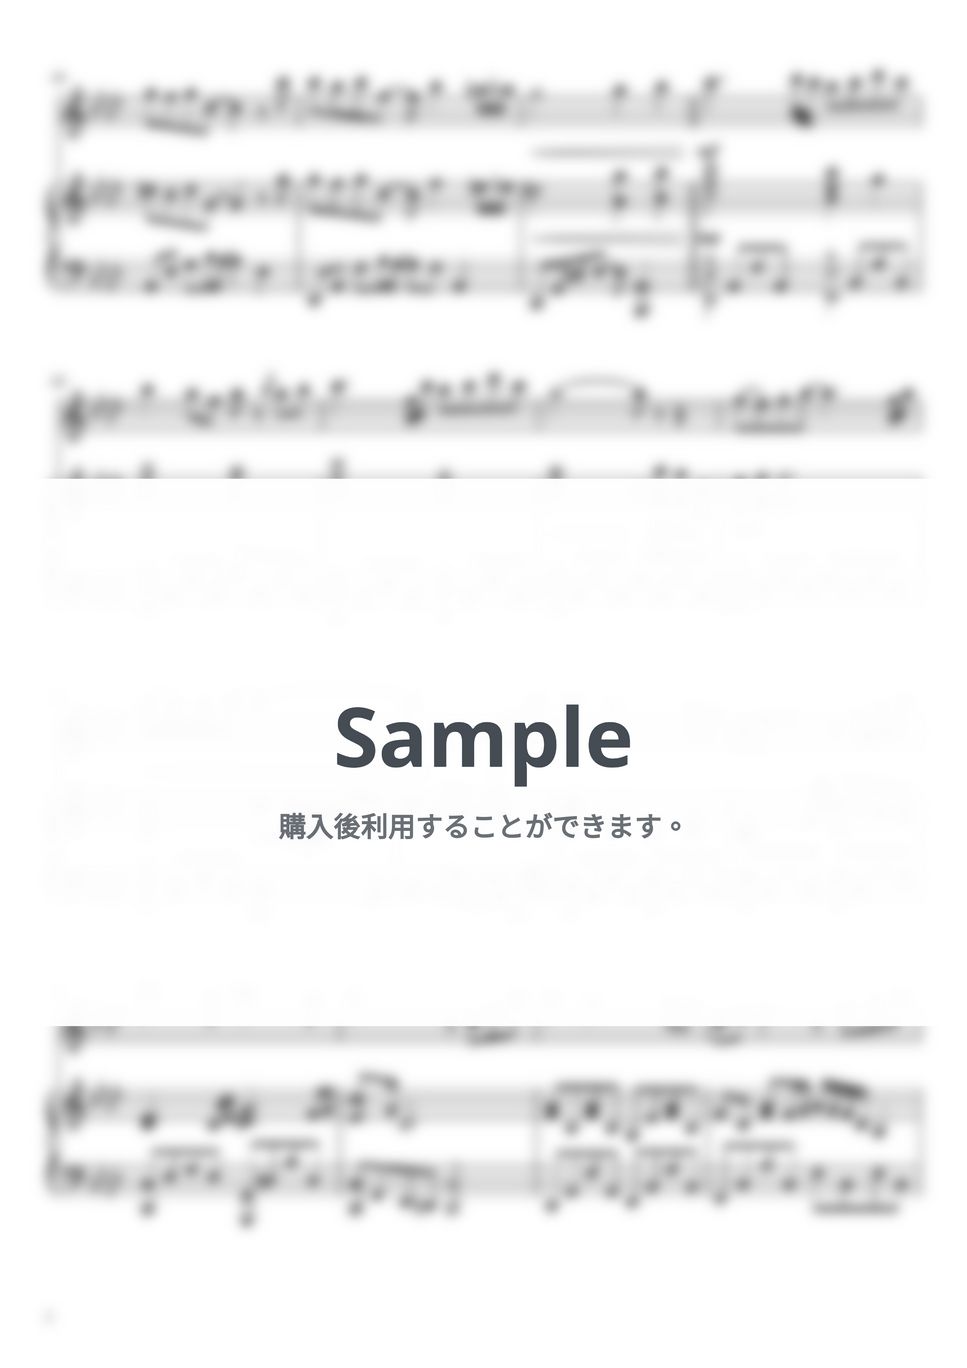 もののけ姫 - アシタカせっ記 (フルート&ピアノ伴奏) by PiaFlu